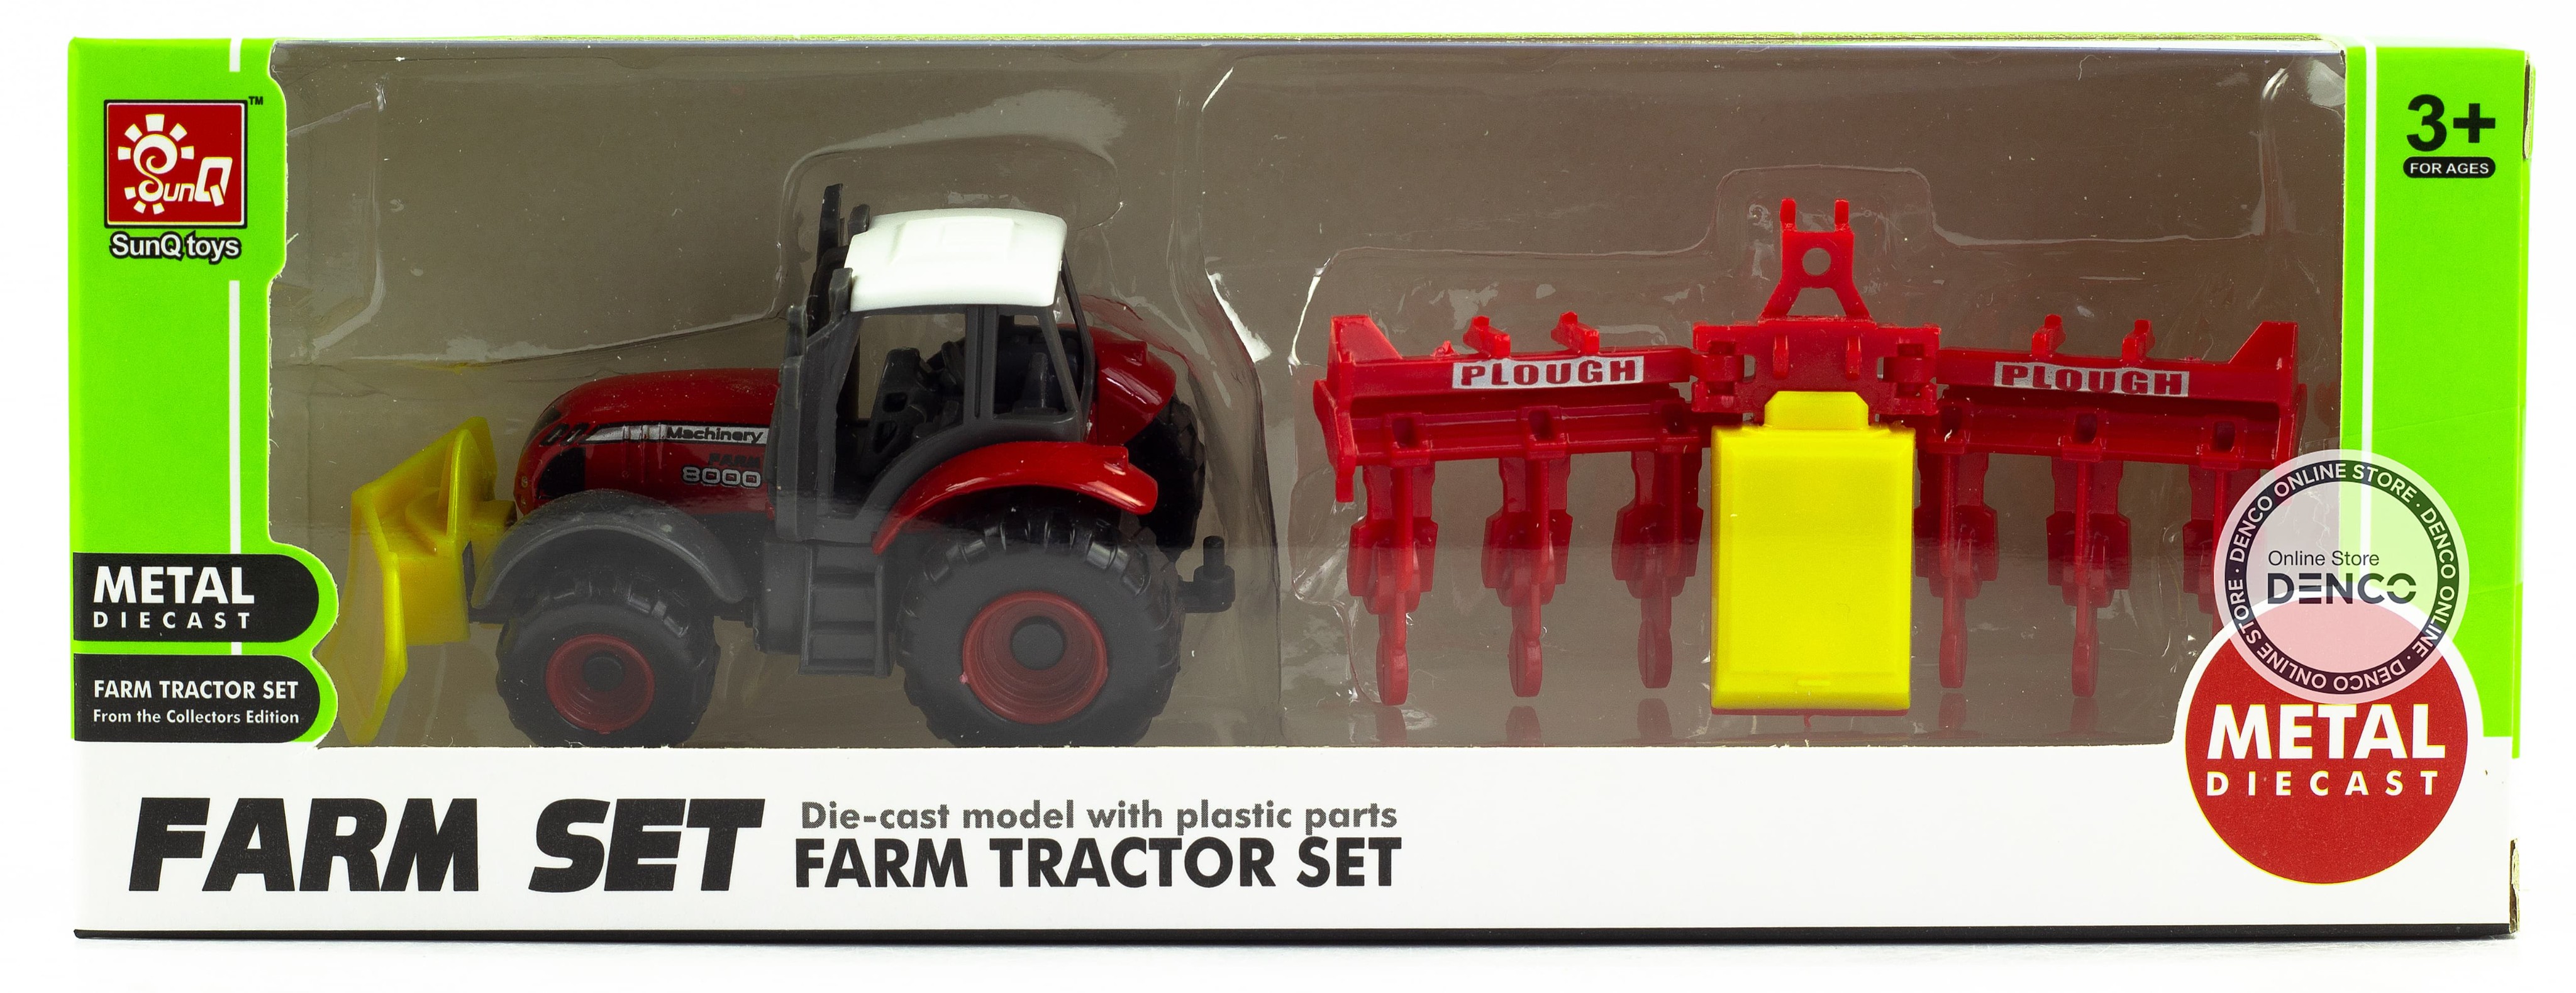 Машинка металлическая Farm Set «Трактор сельскохозяйственный с прицепом» SQ82002-4 / Красно-желтый